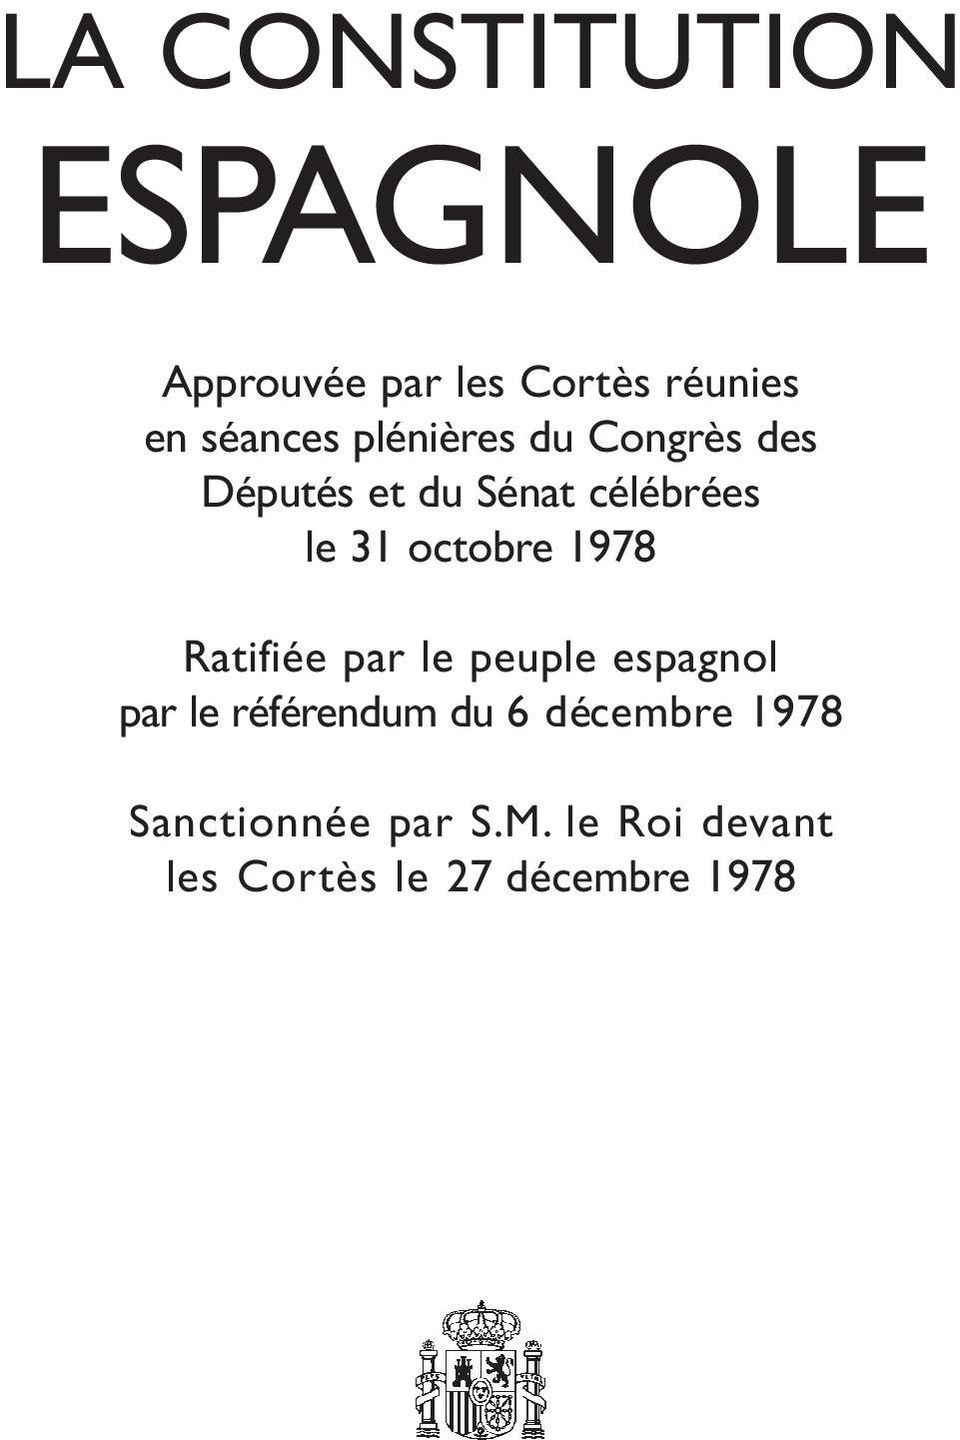 1978 Ratifiée par le peuple espagnol par le référendum du 6 décembre